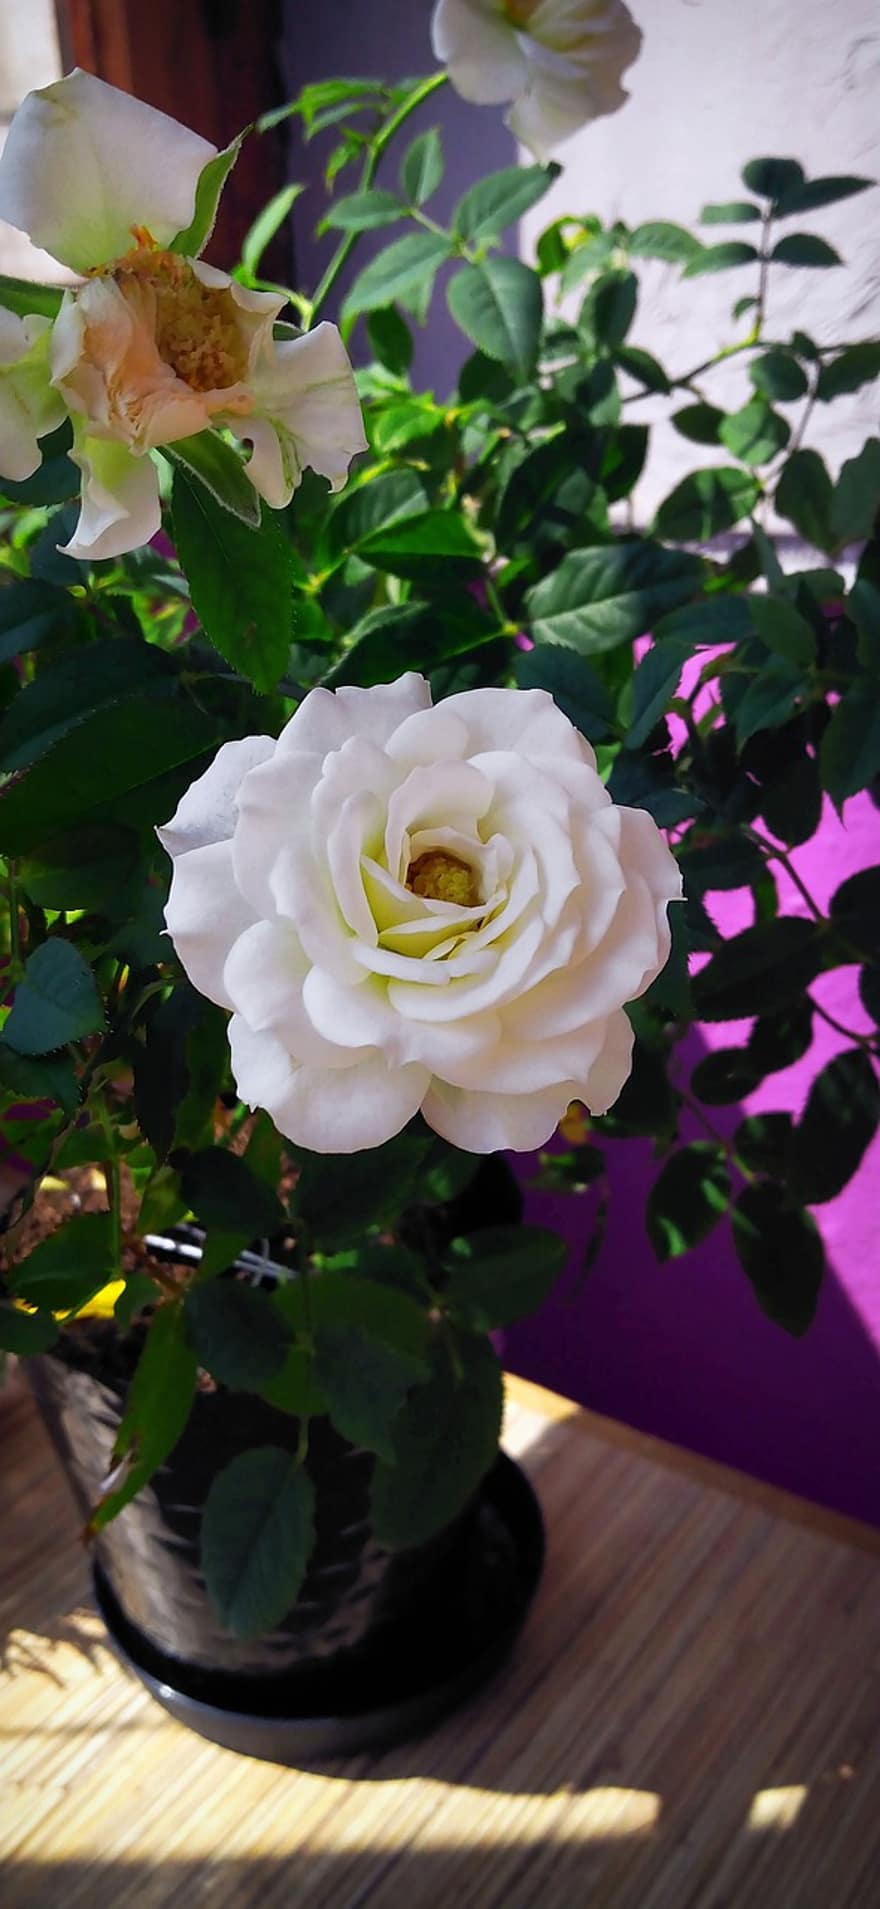 růže, bílá růže, květiny, bílý, okvětní lístek, bílá květina, růžový keř